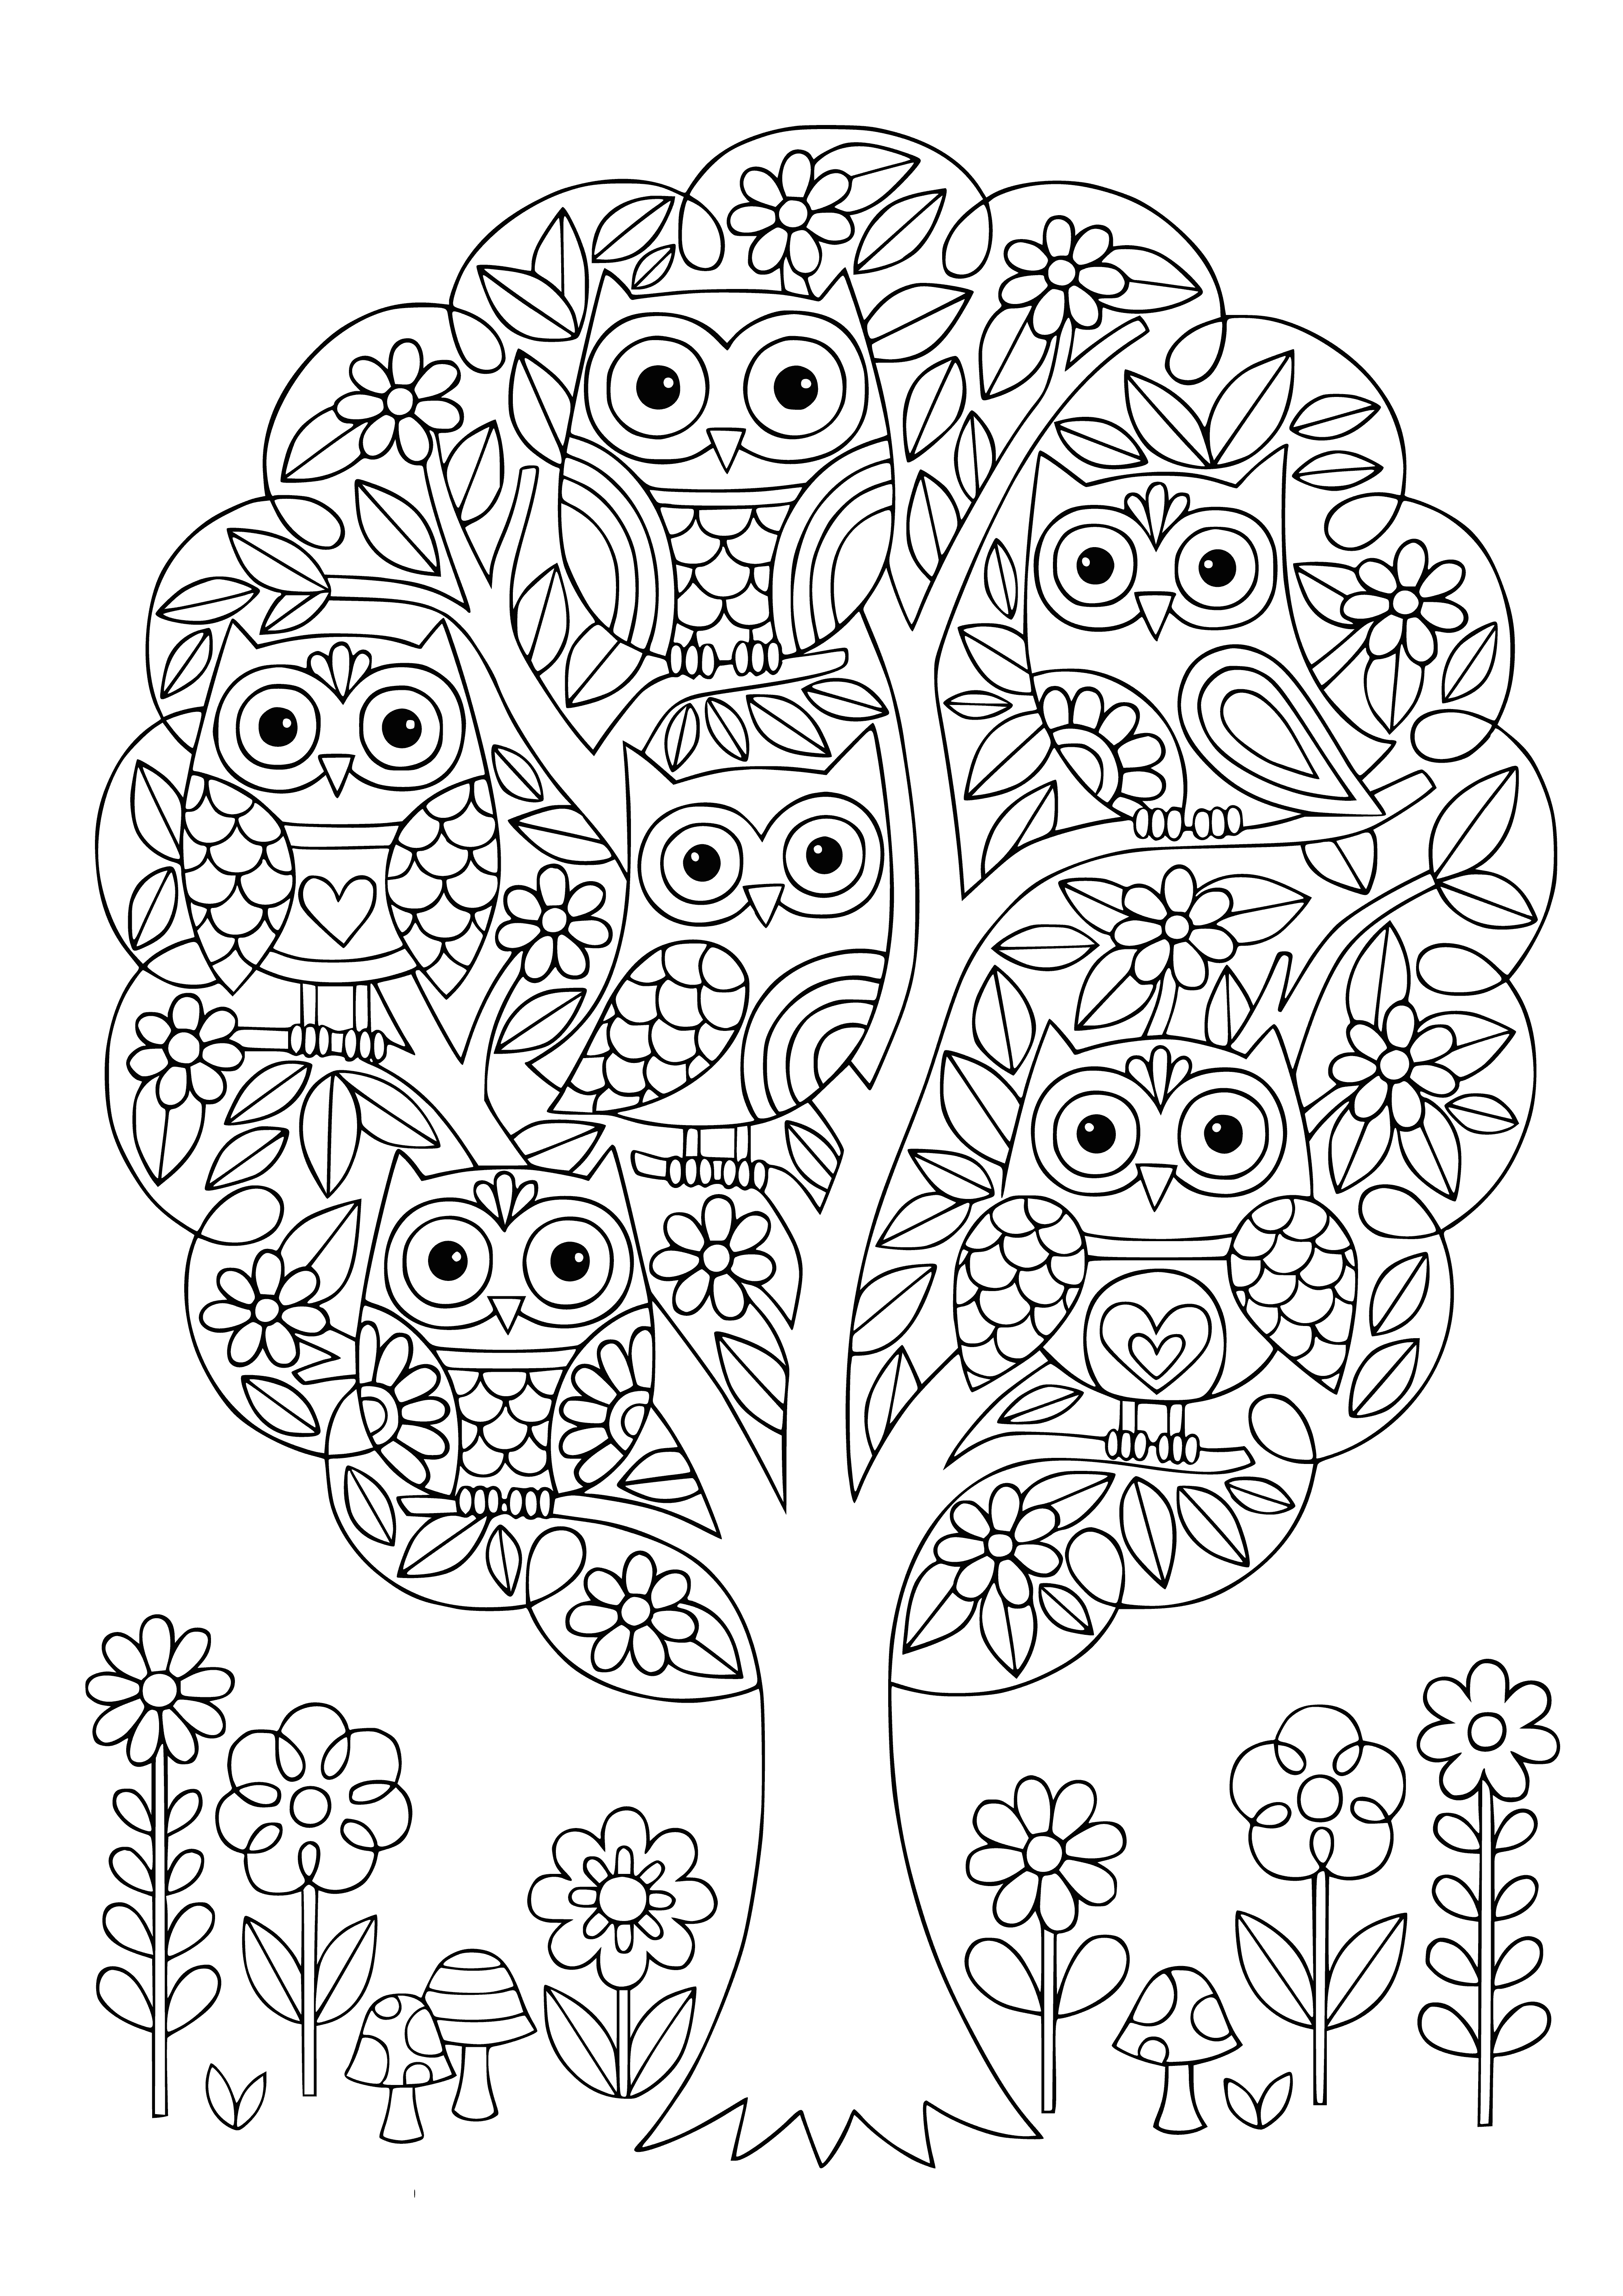 Corujas na árvore página para colorir